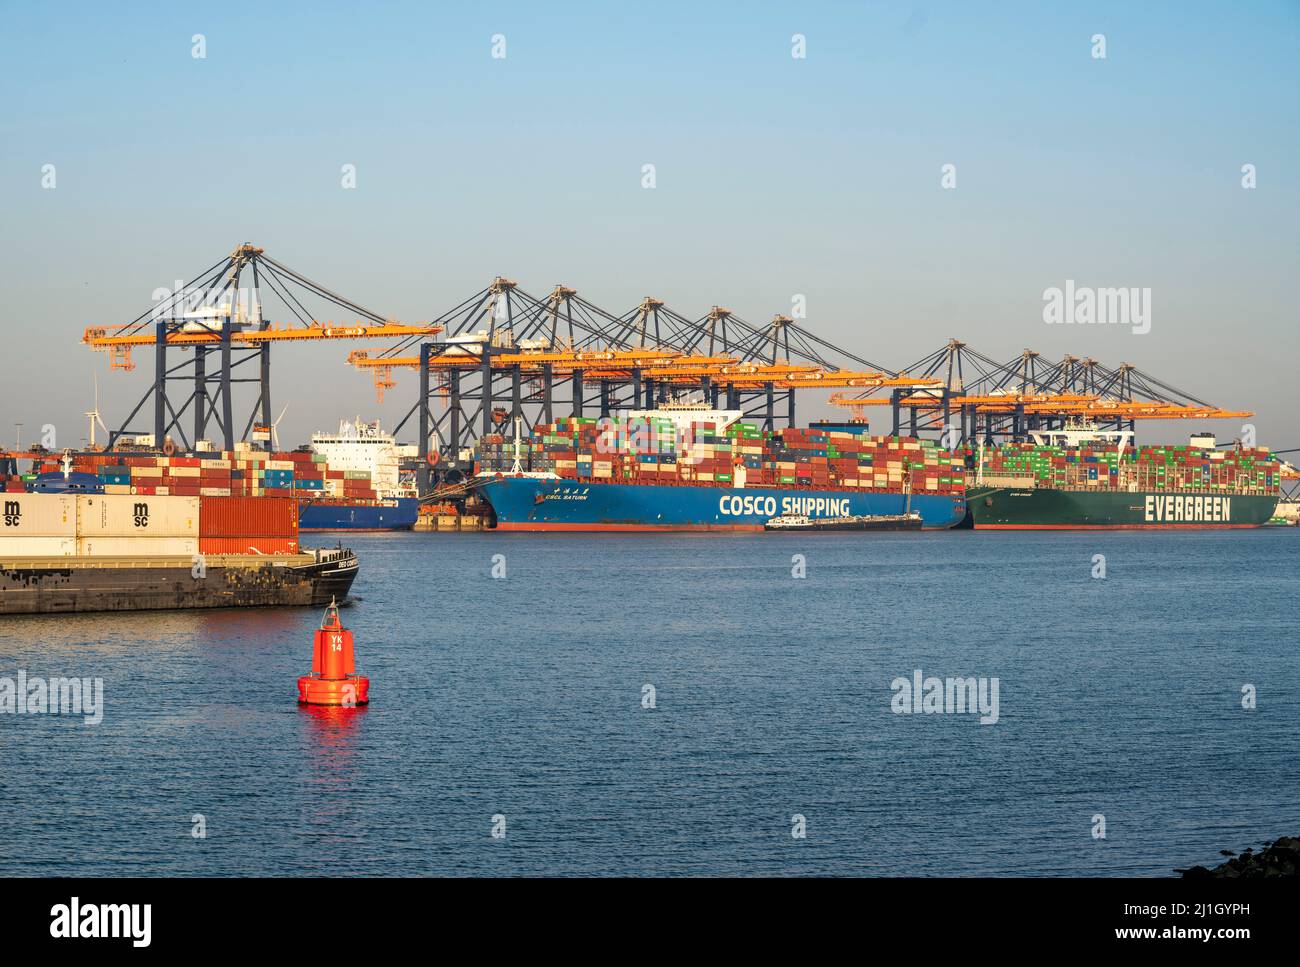 Euromax Container Terminal, container freighters, nel porto marittimo di Rotterdam, Paesi Bassi, porto di mare profondo Maasvlakte 2, su una lan creata artificialmente Foto Stock